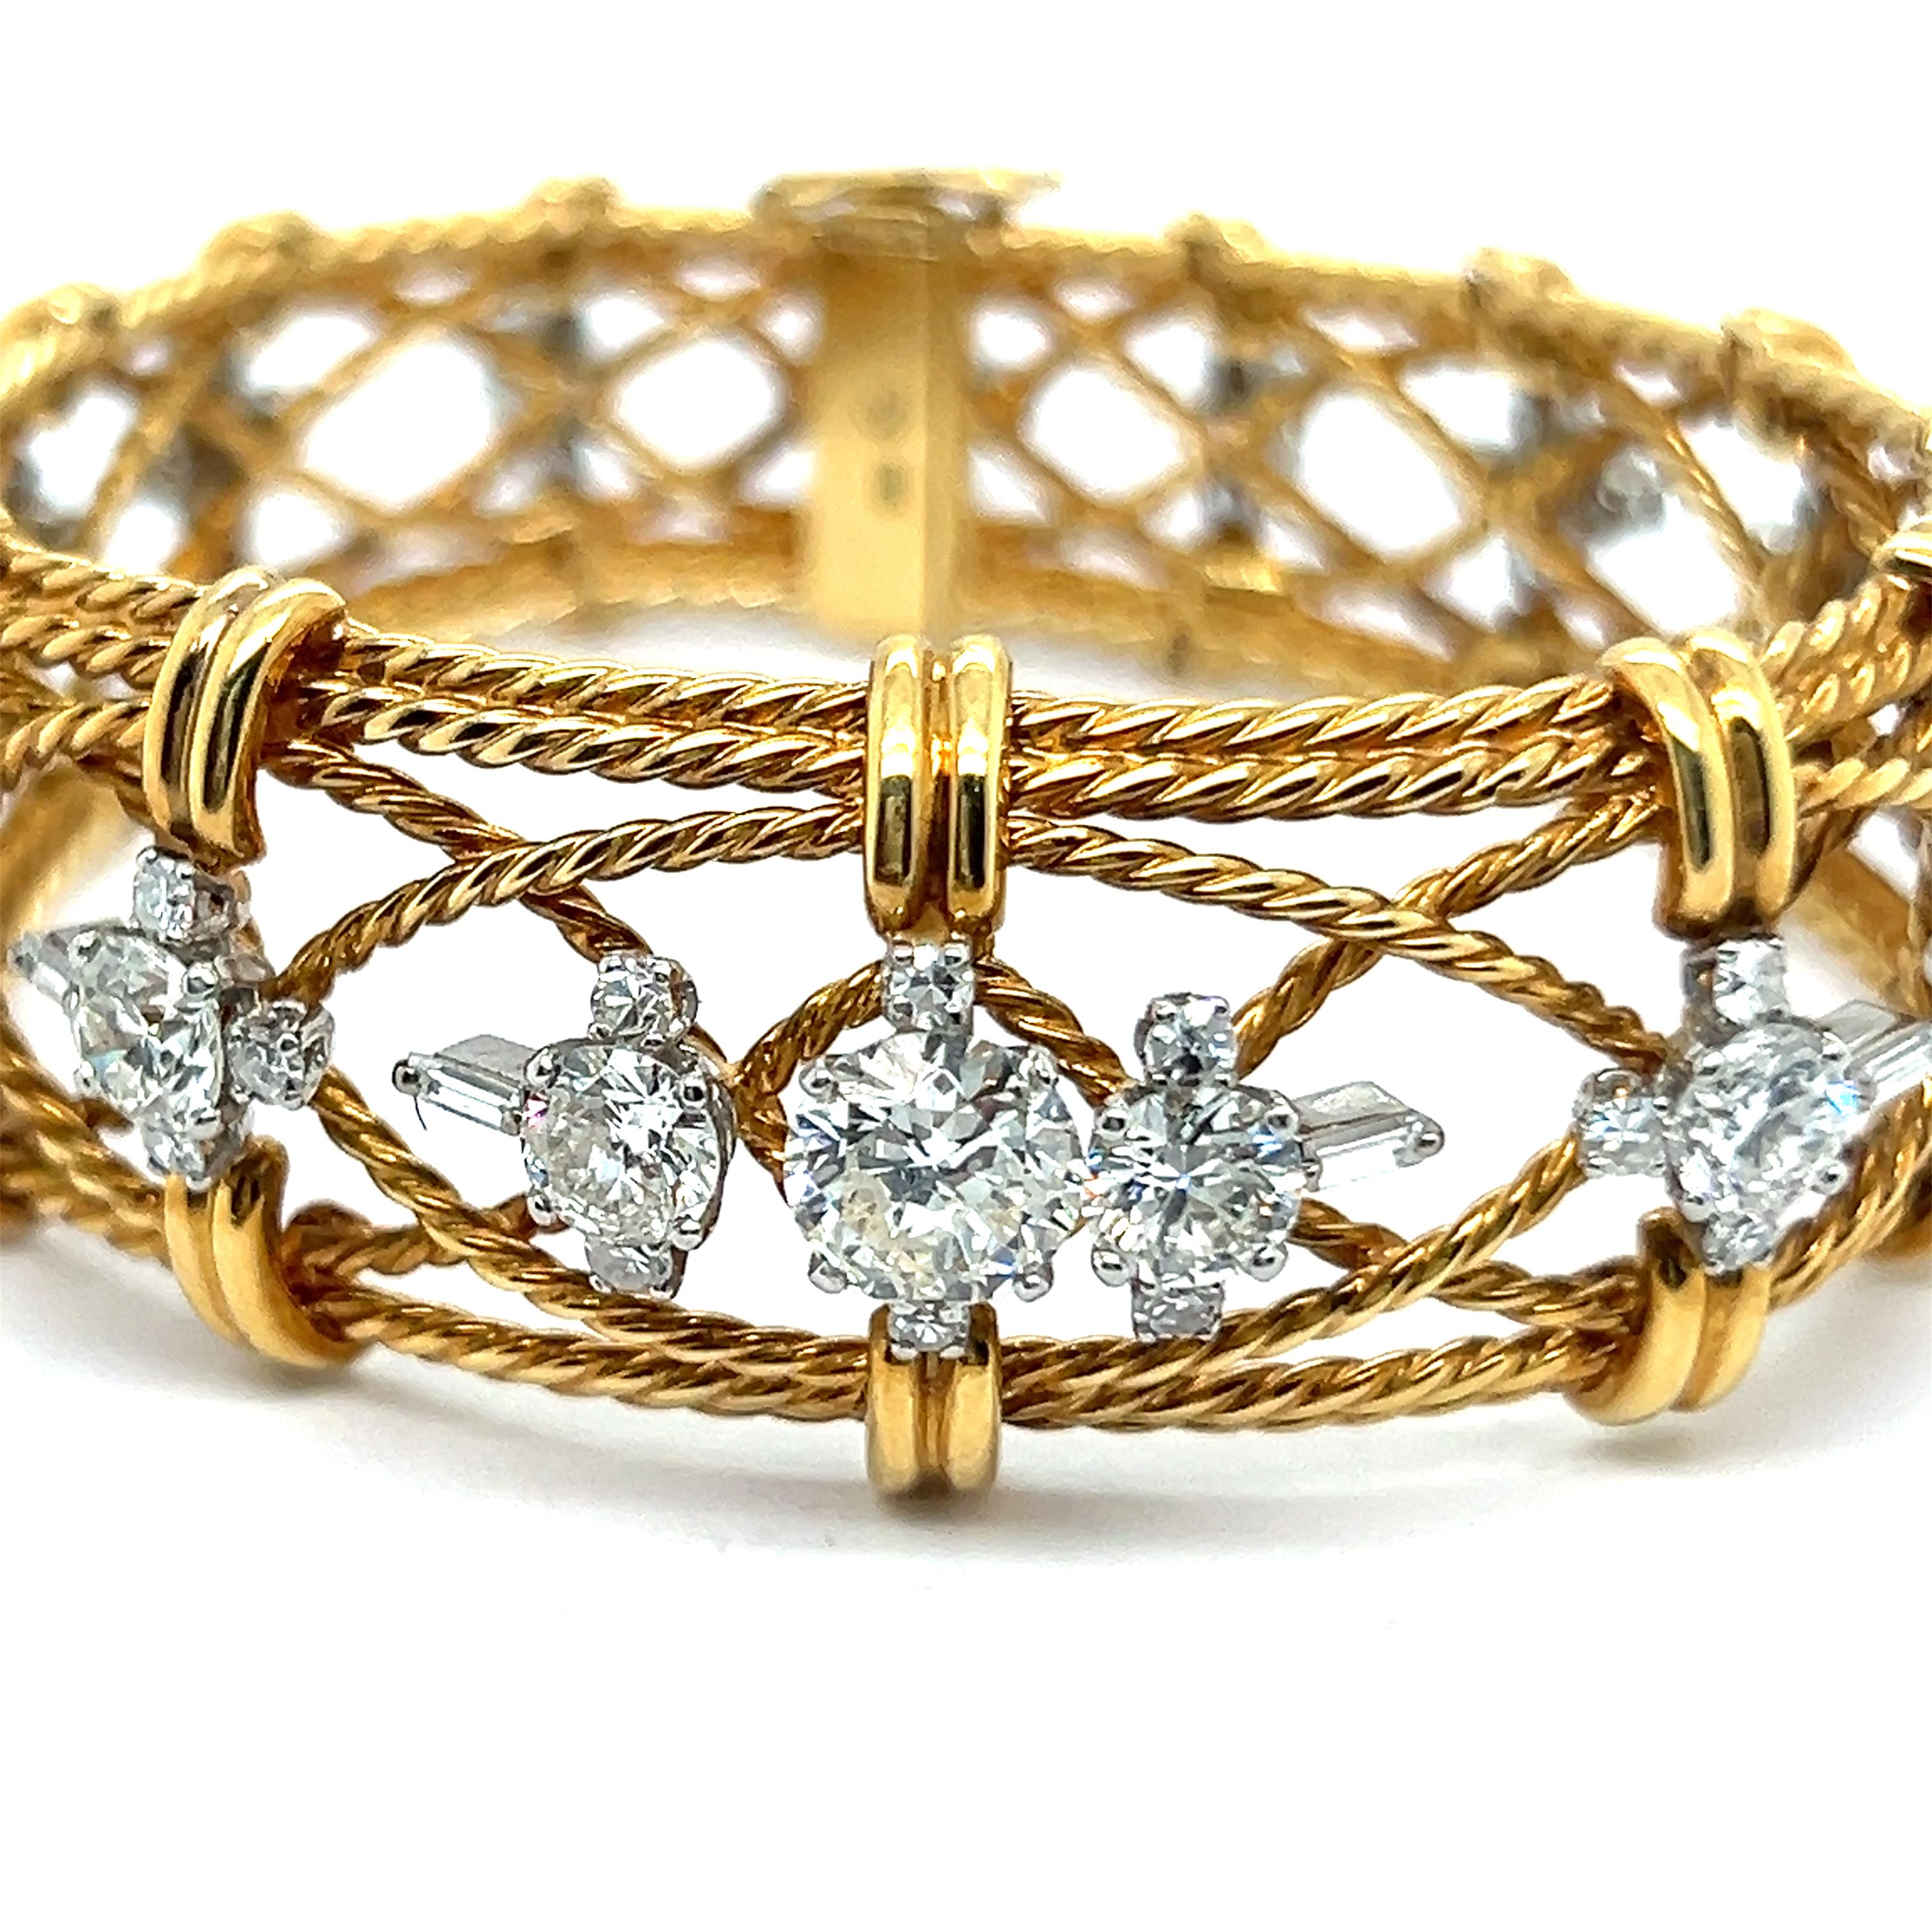 Armband mit Diamanten aus 18 Karat Gold von Gübelin

Lassen Sie sich von der Anziehungskraft des Armbands Gübelin verführen, das von raffinierter Eleganz zeugt. 

Der aufwendig geflochtene Rahmen aus 18 Karat Gelbgold strahlt Raffinesse aus.